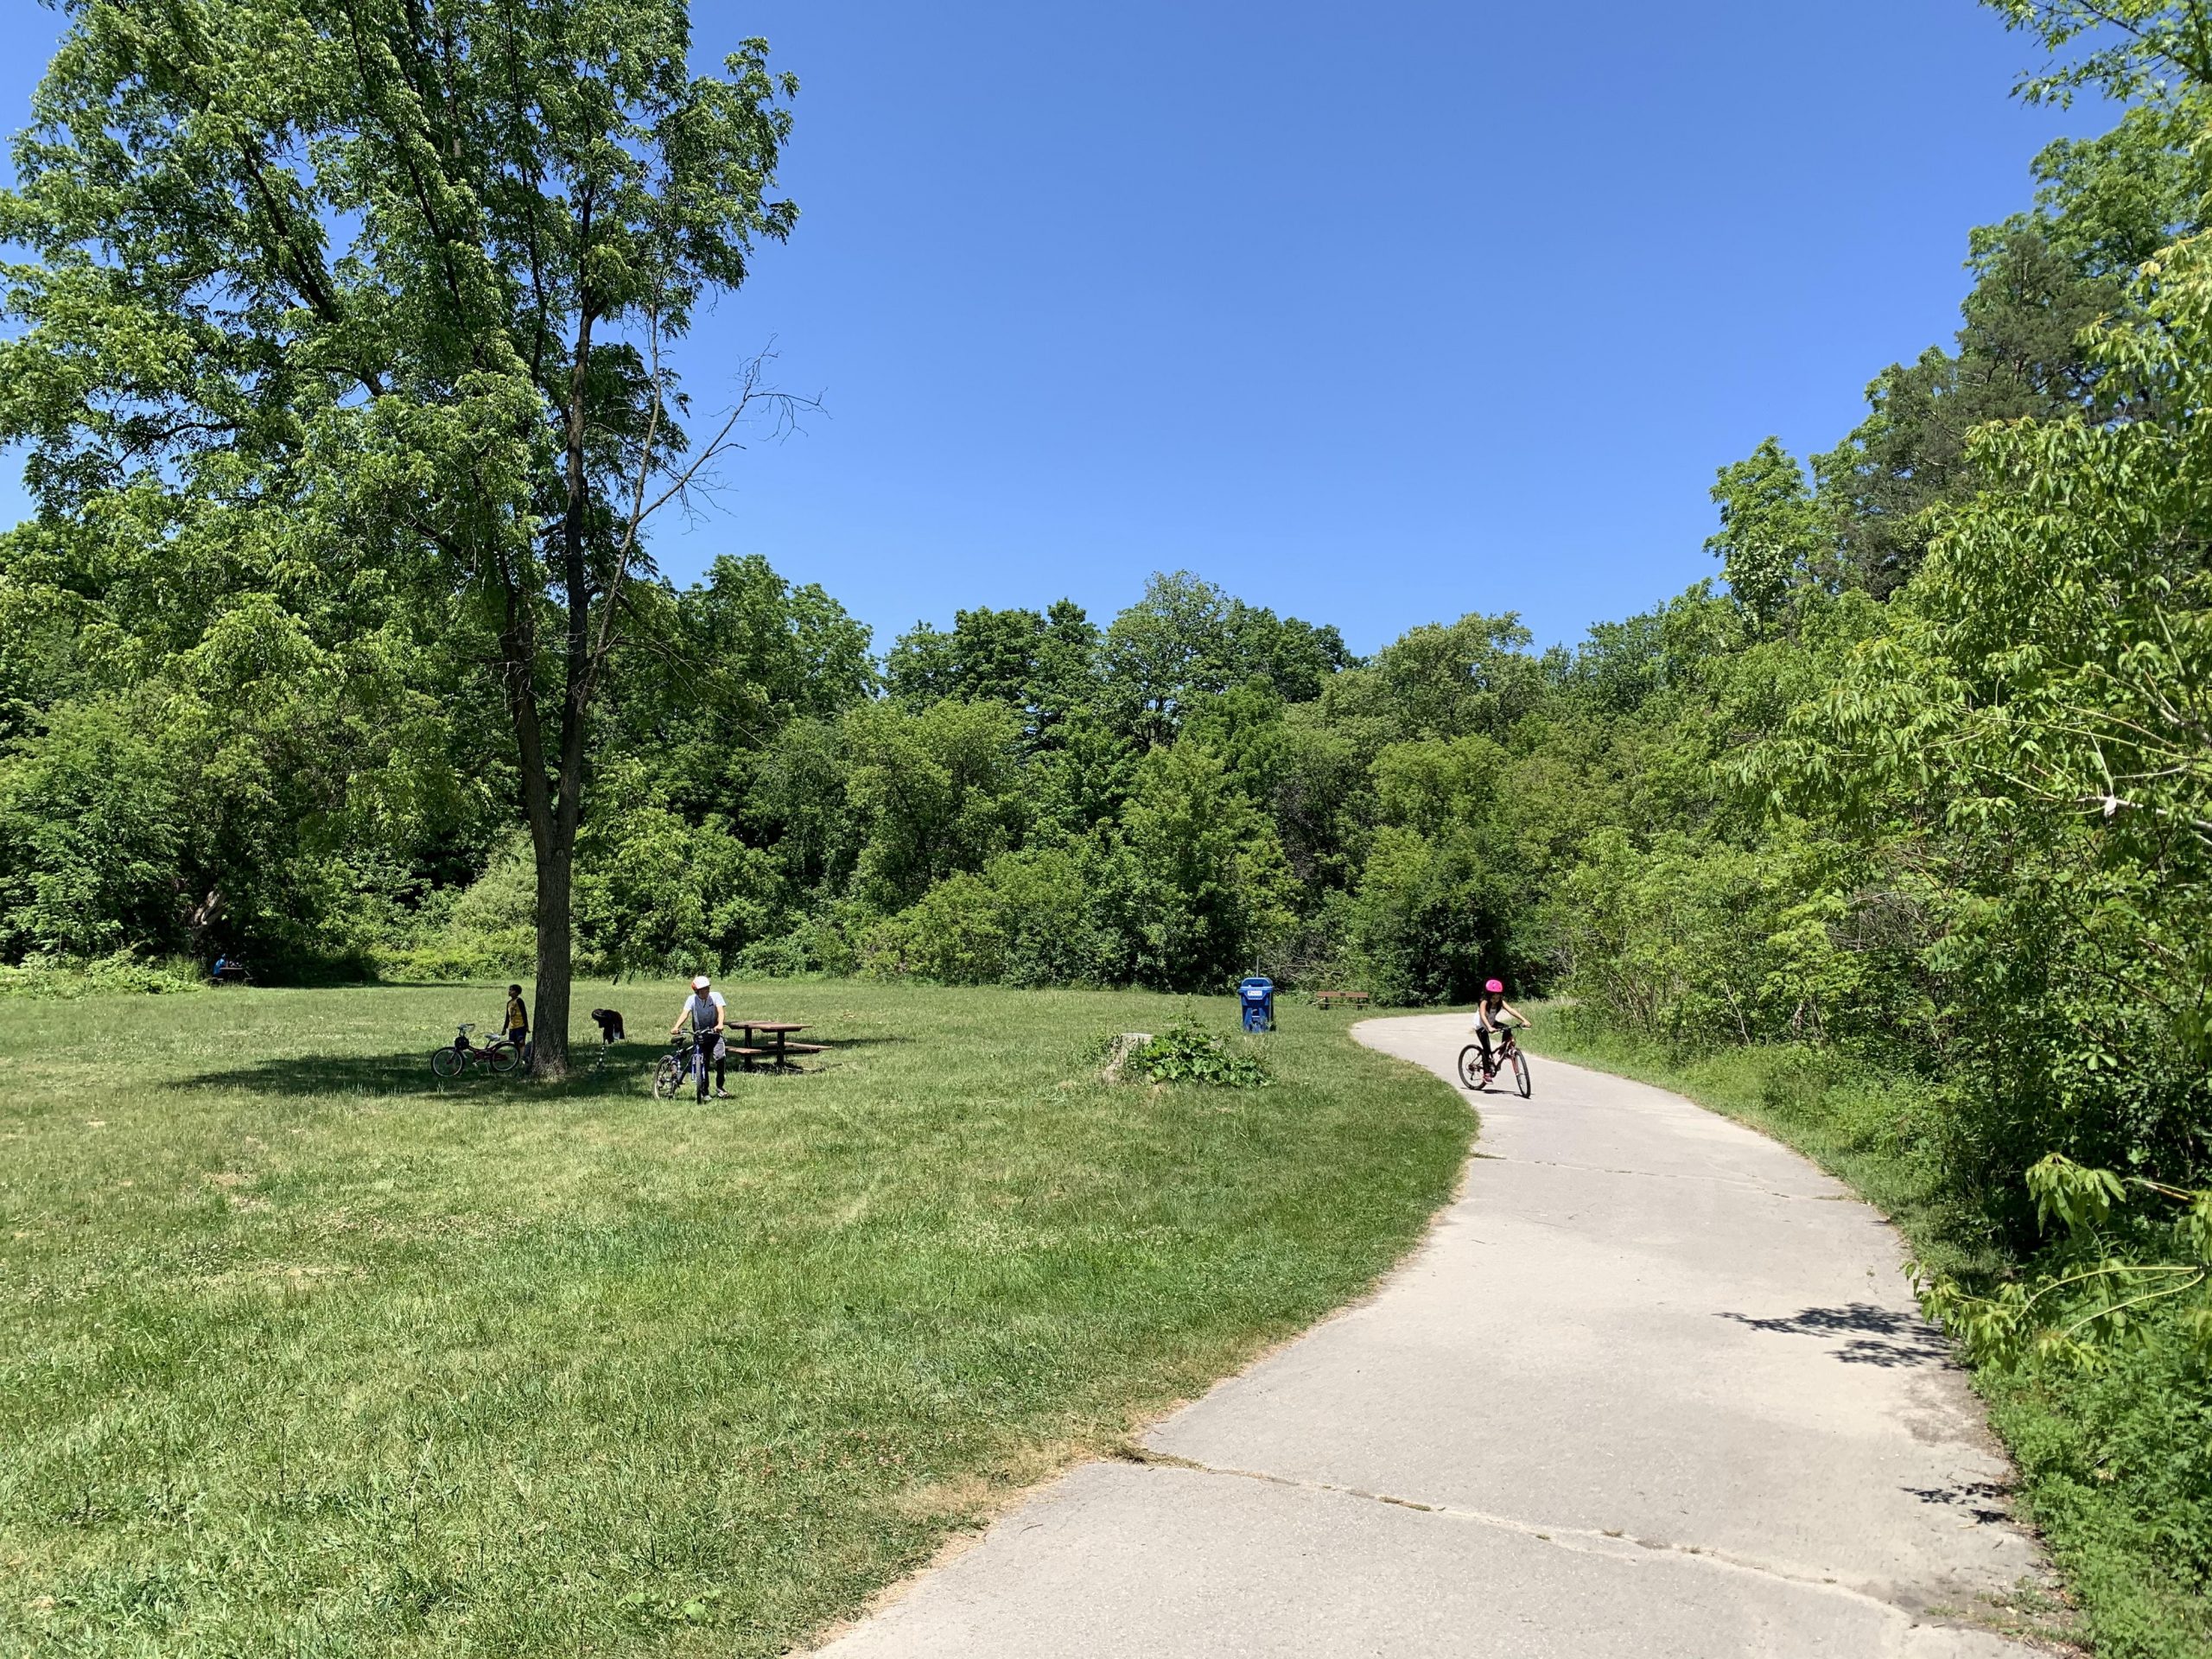 A cement path through a lush park and a child riding a bike